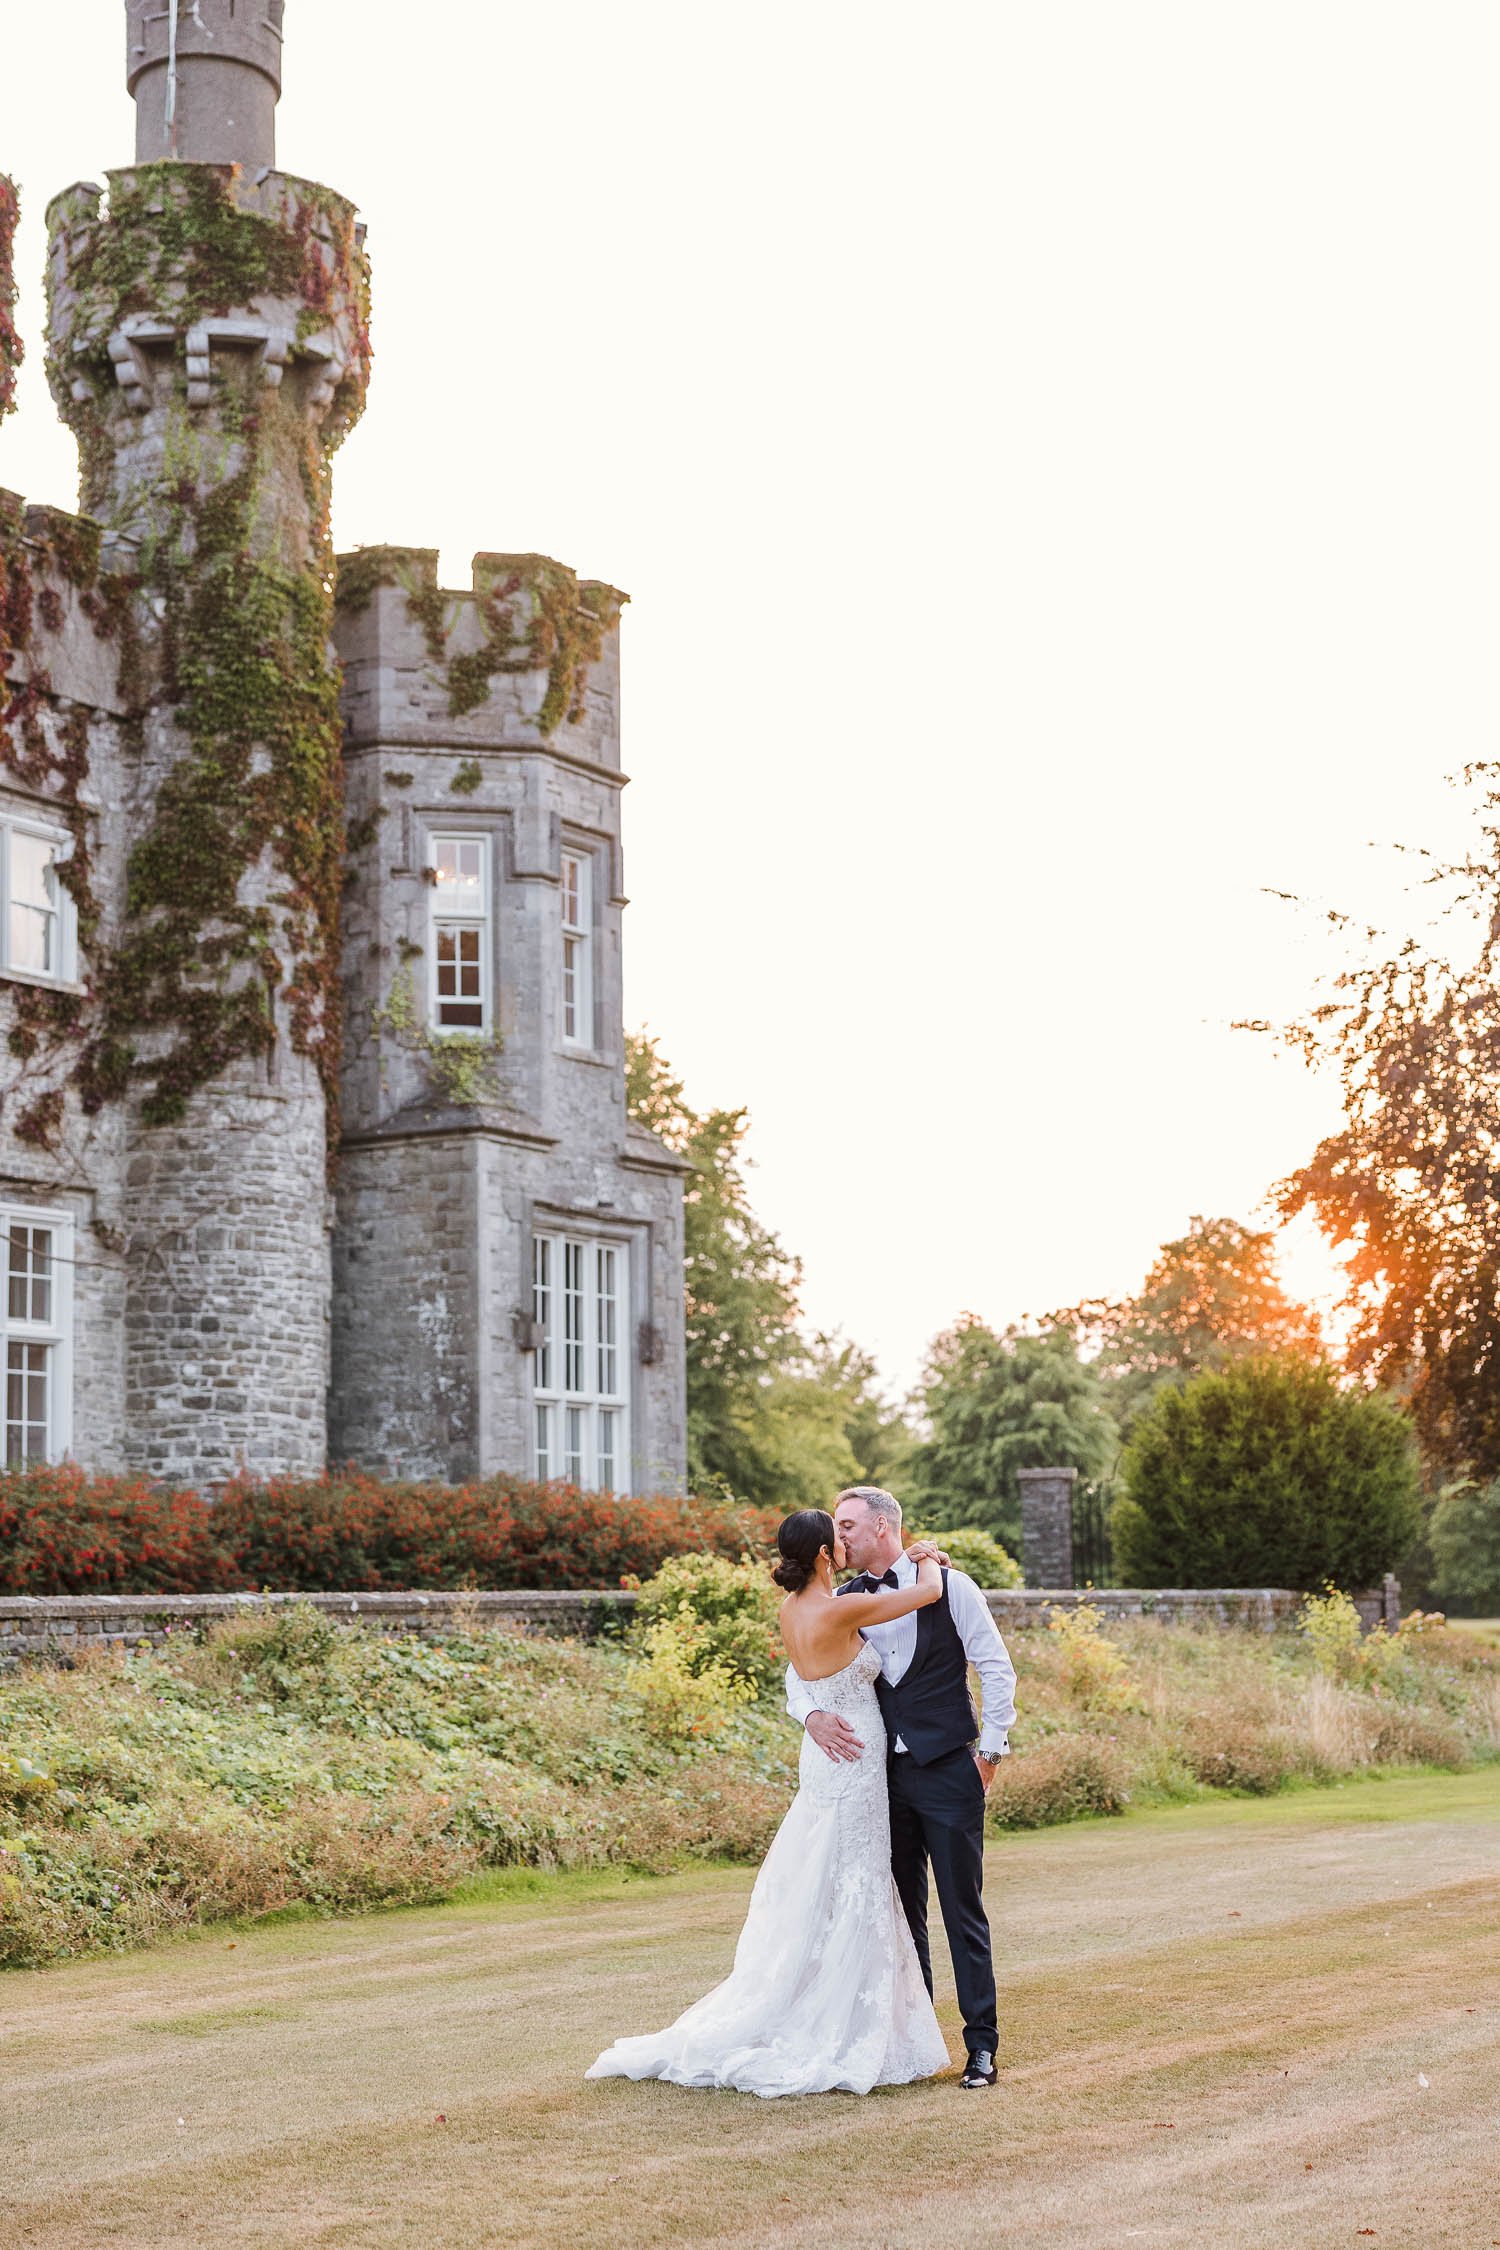 Sunset wedding photo at Luttrellstown Castle